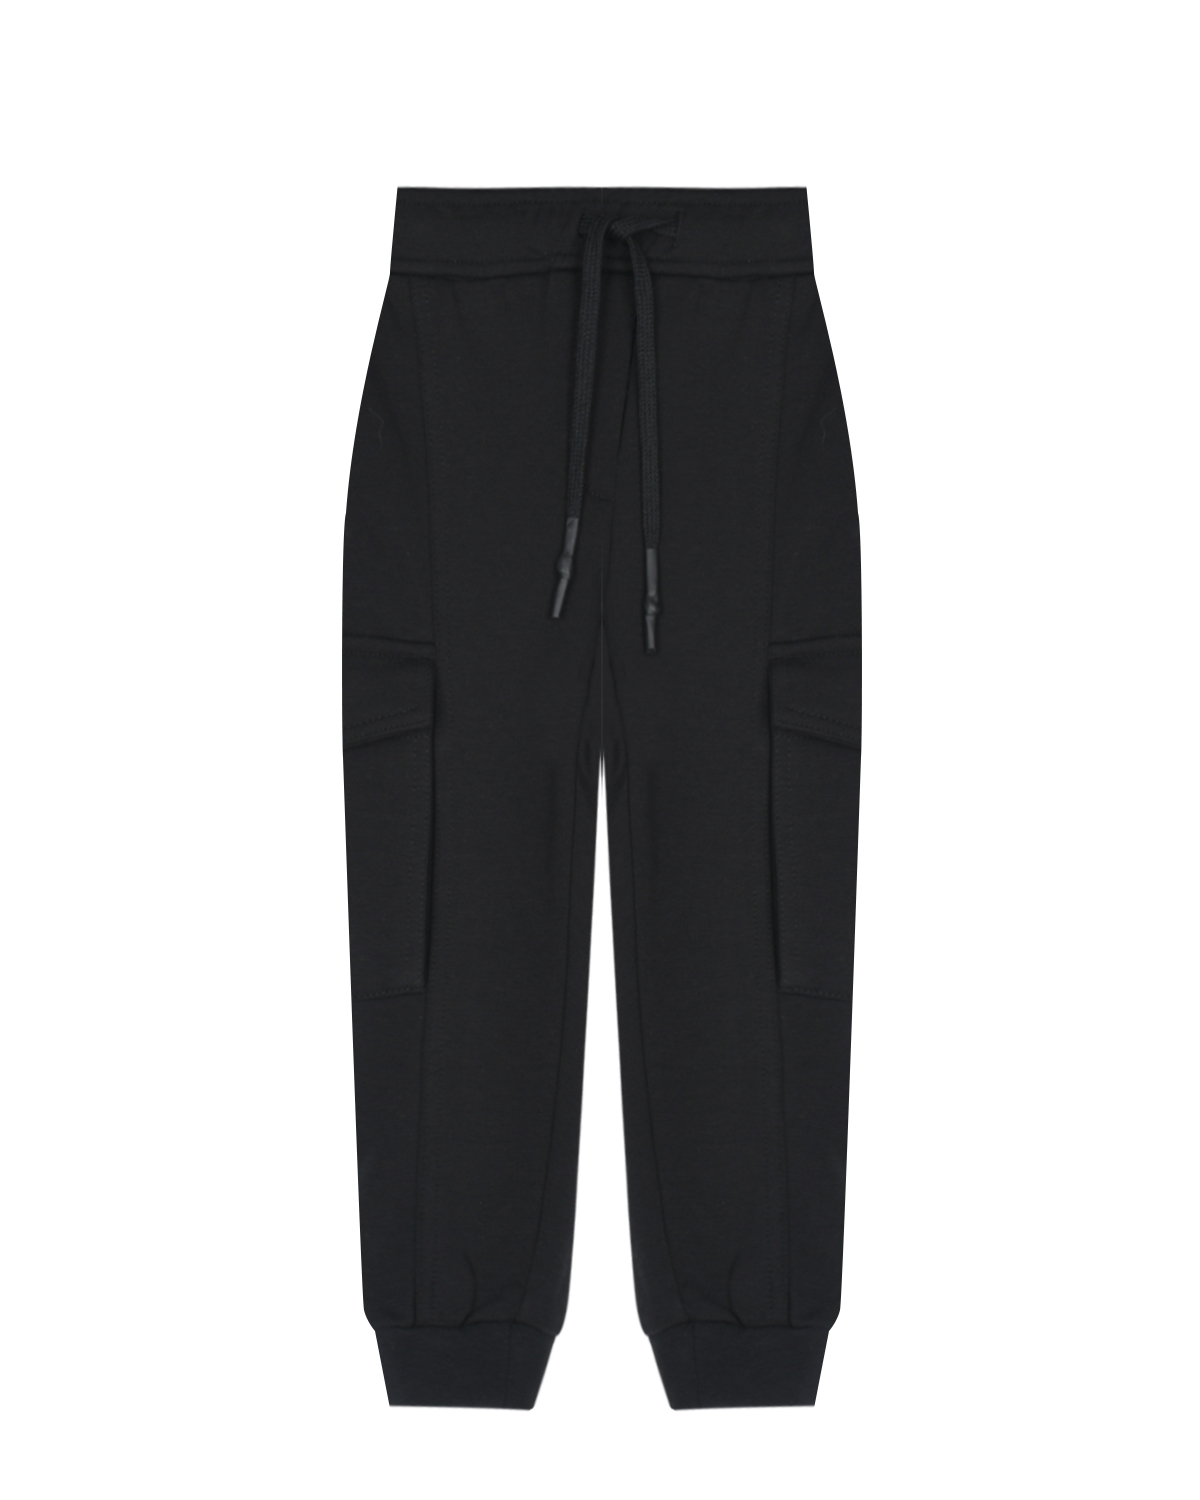 Спортивные черные брюки с накладными карманами Antony Morato детские, размер 116, цвет черный